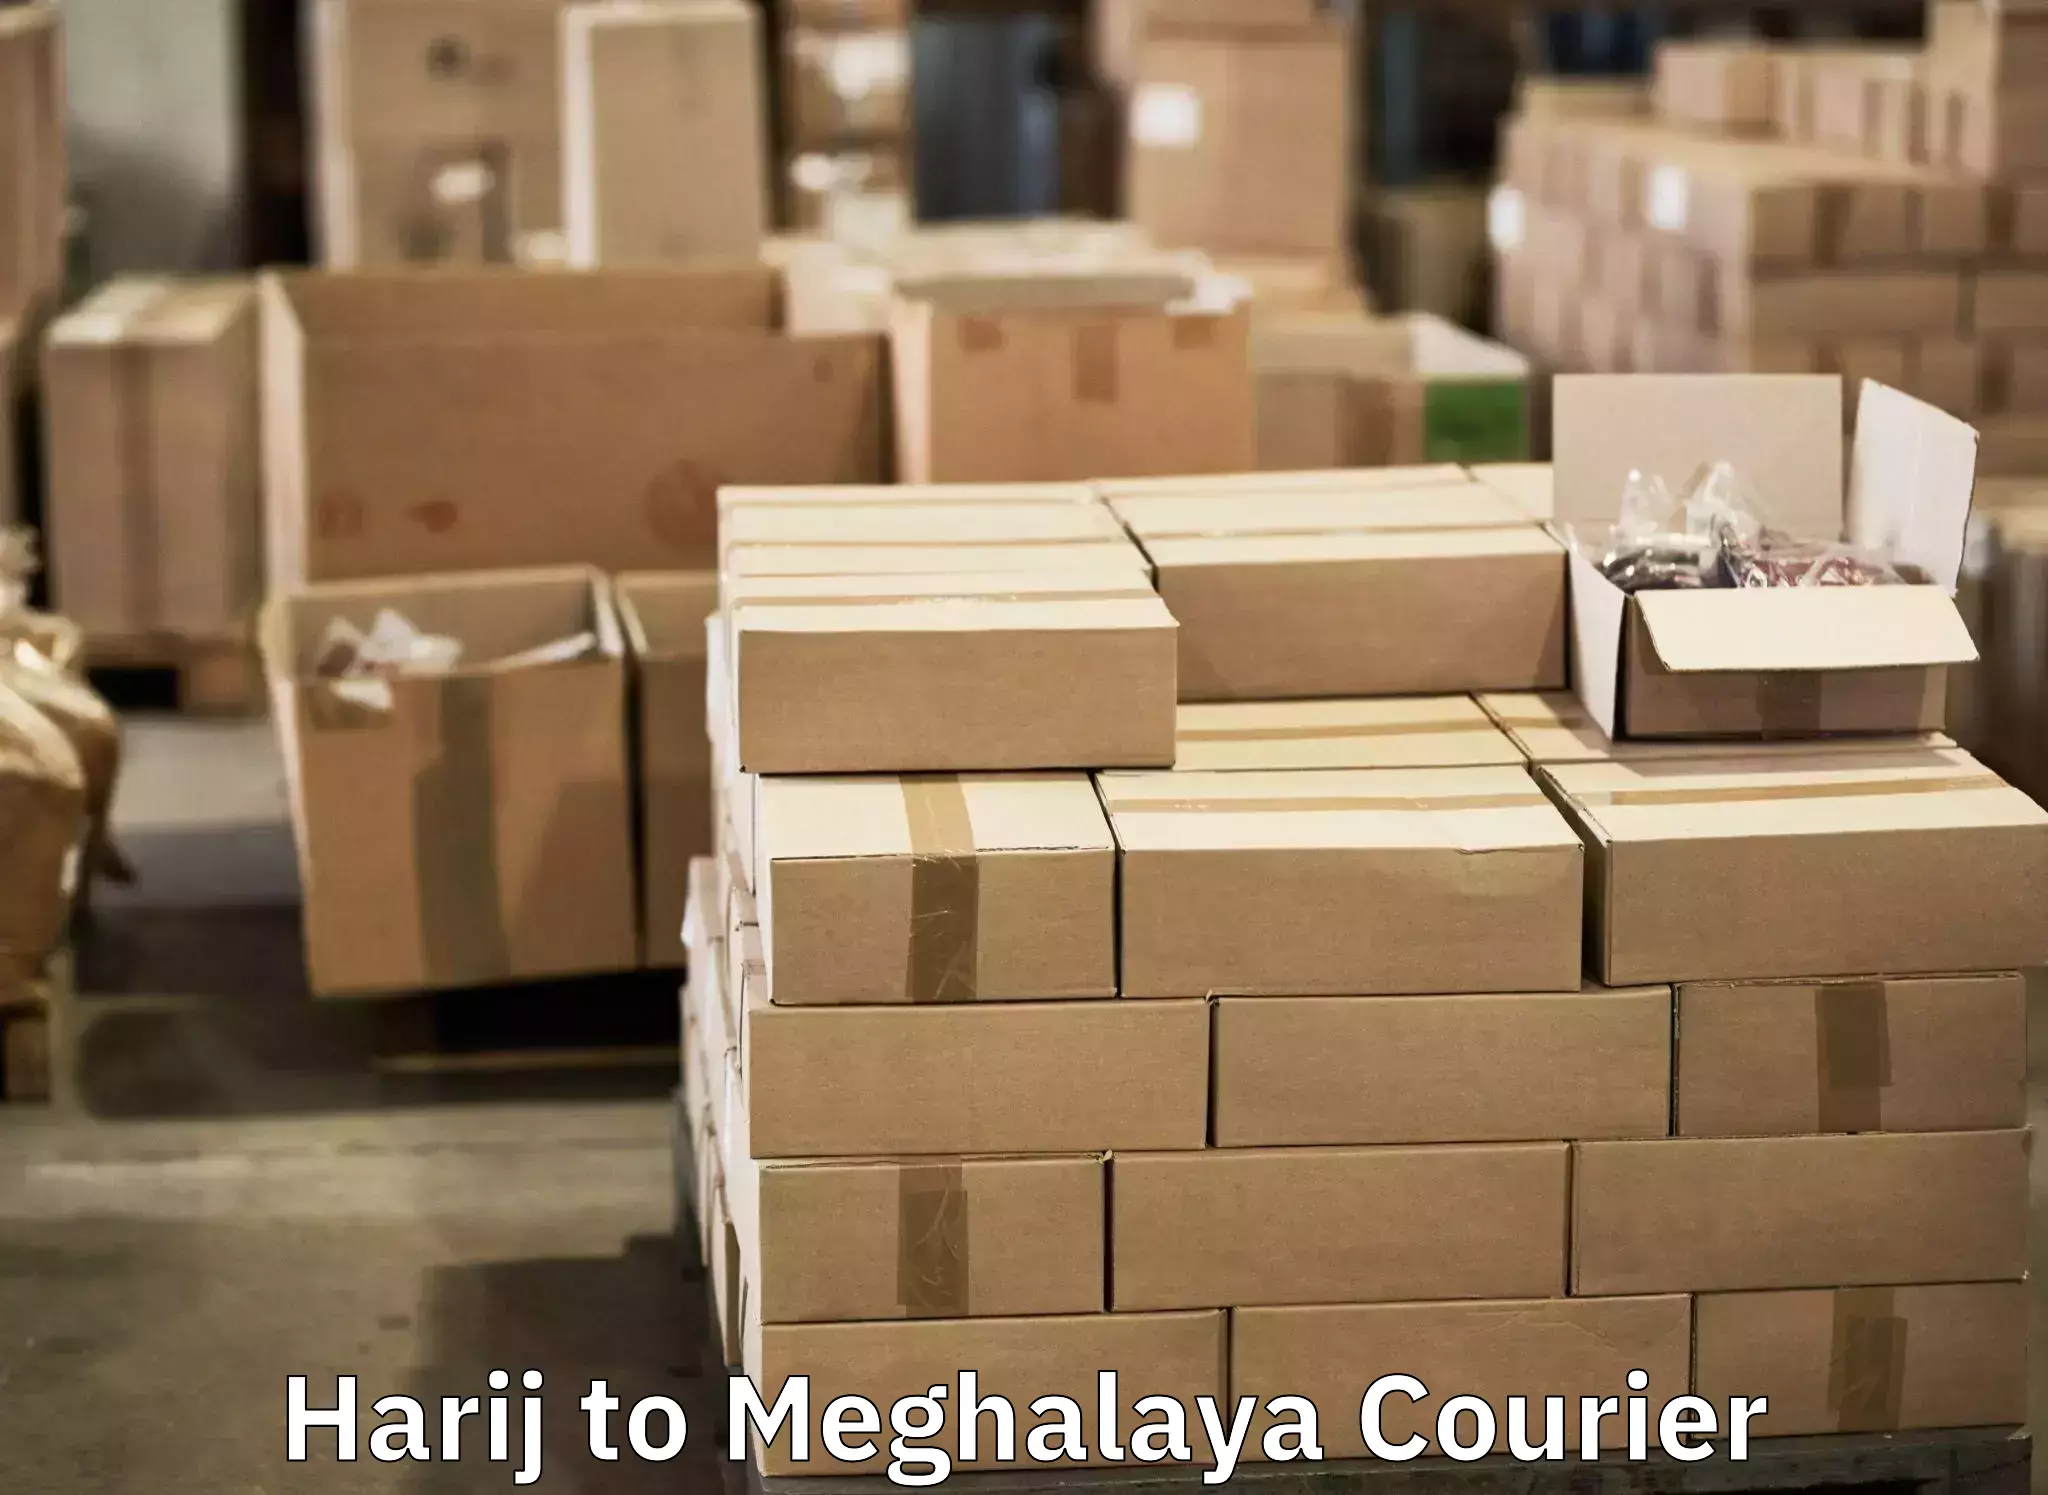 Baggage transport management Harij to Meghalaya